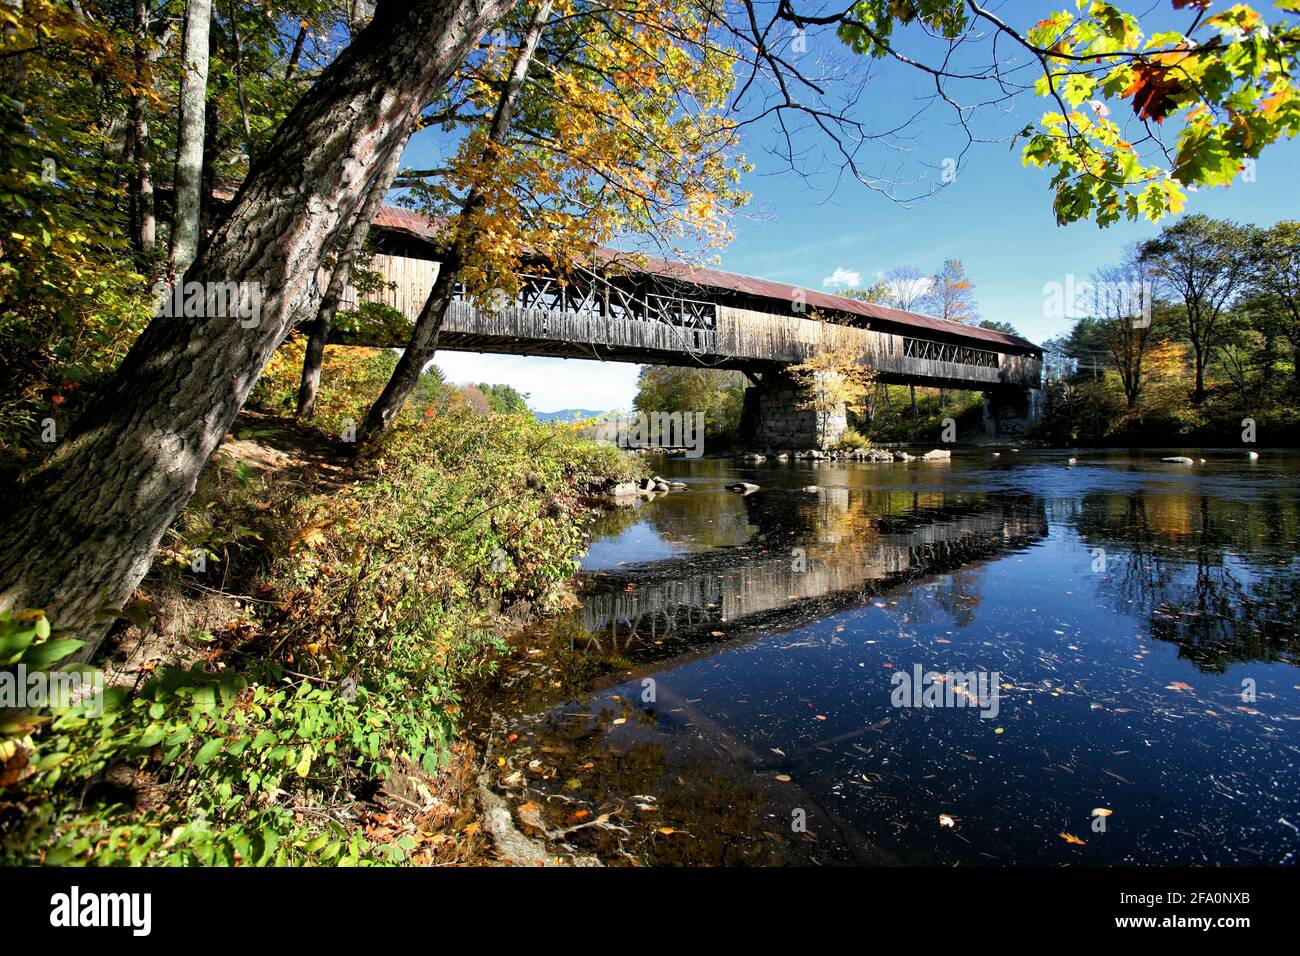 Le pont couvert de Blair à Campton, dans le New Hampshire, au-dessus de la rivière Pegewegasset, a été construit à l'origine en 1869 dans un long treillis avec des arches. Banque D'Images